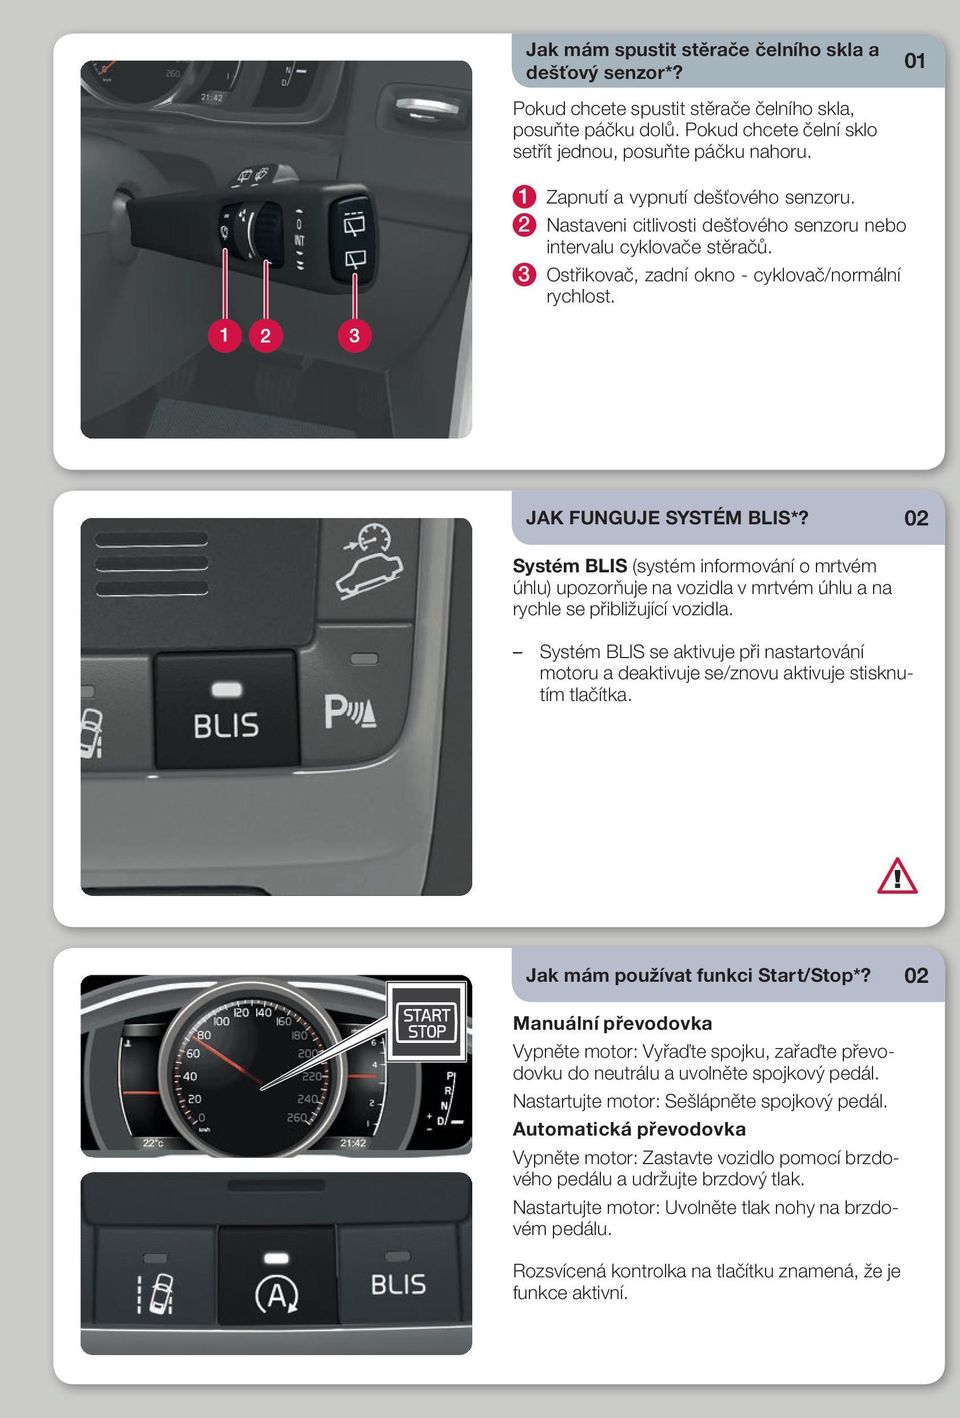 02 Systém BLIS (systém informování o mrtvém úhlu) upozorňuje na vozidla v mrtvém úhlu a na rychle se přibližující vozidla.